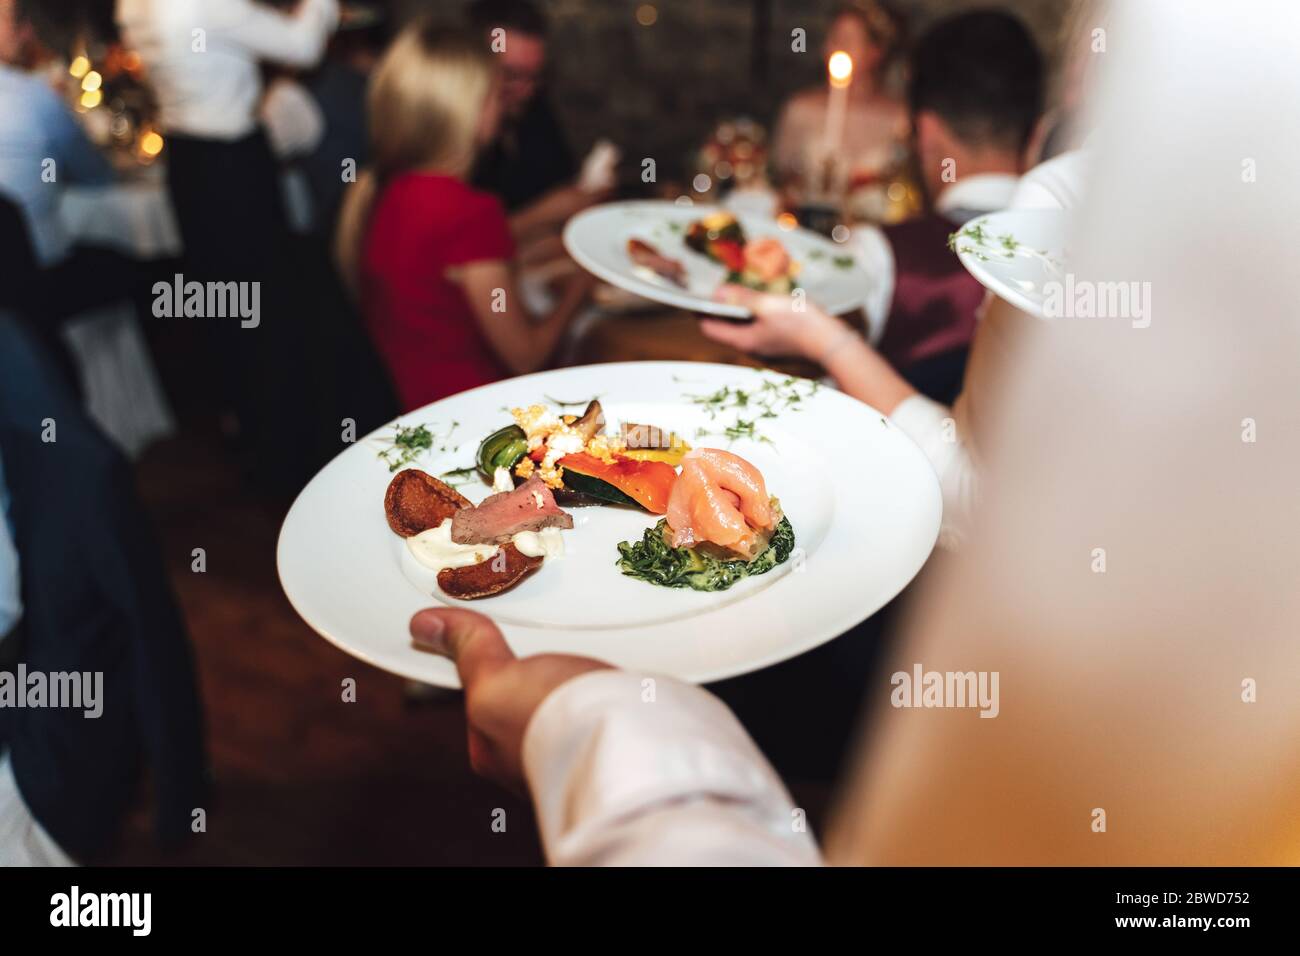 Homme tenant une assiette blanche avec de la nourriture a obtenu de la table de buffet en libre-service. Concept de célébration, fête, anniversaire ou mariage. Banque D'Images